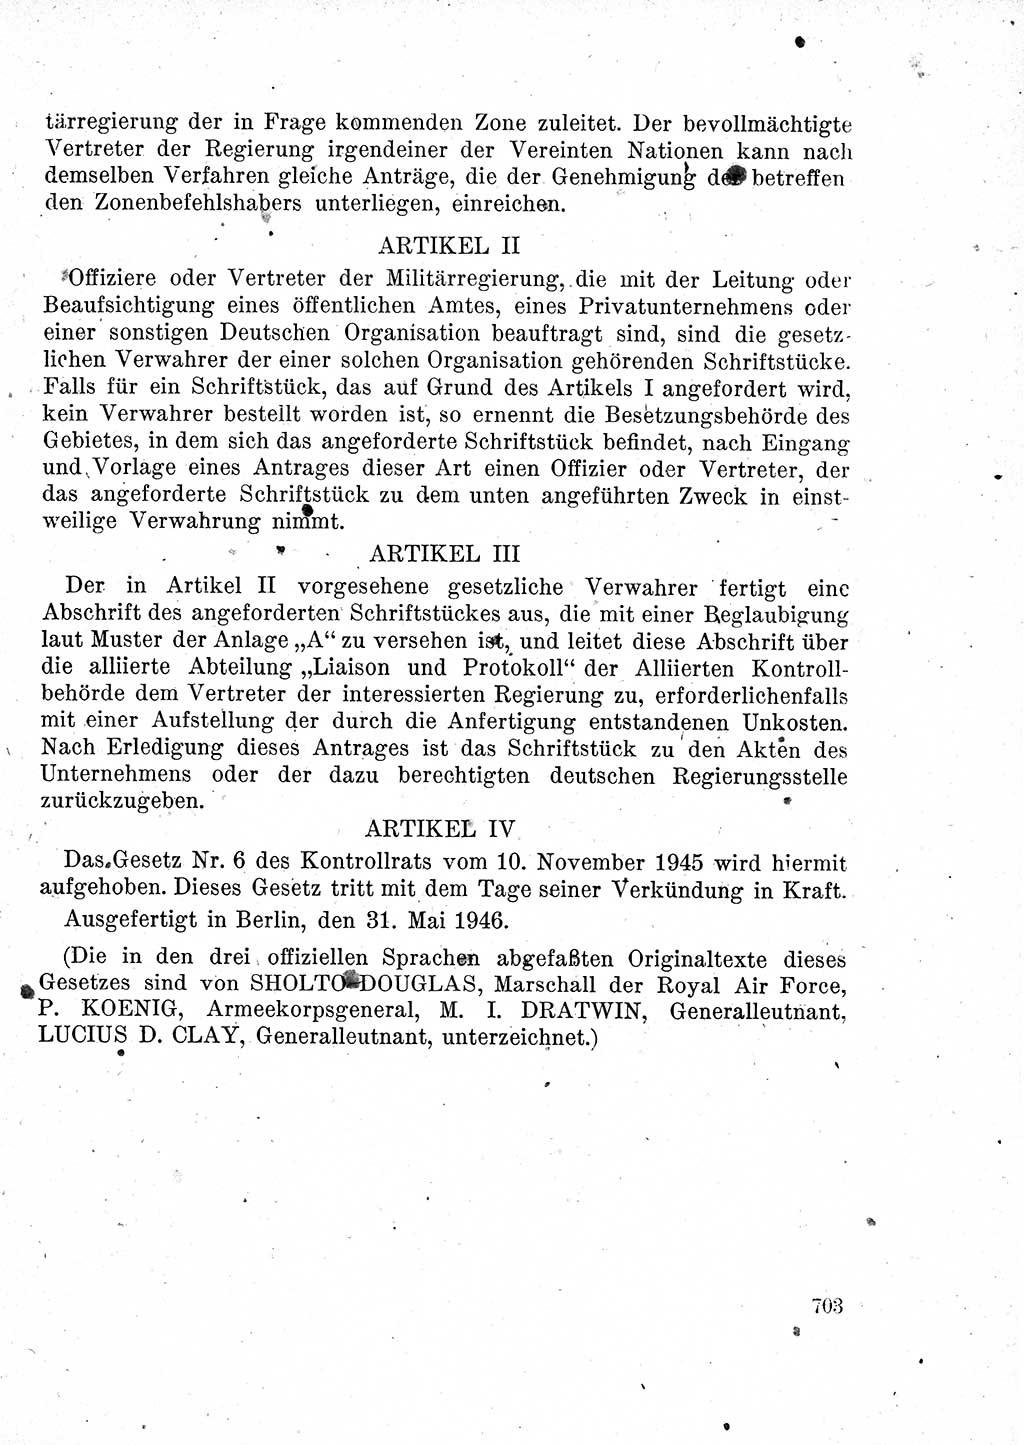 Das Recht der Besatzungsmacht (Deutschland), Proklamationen, Deklerationen, Verordnungen, Gesetze und Bekanntmachungen 1947, Seite 703 (R. Bes. Dtl. 1947, S. 703)